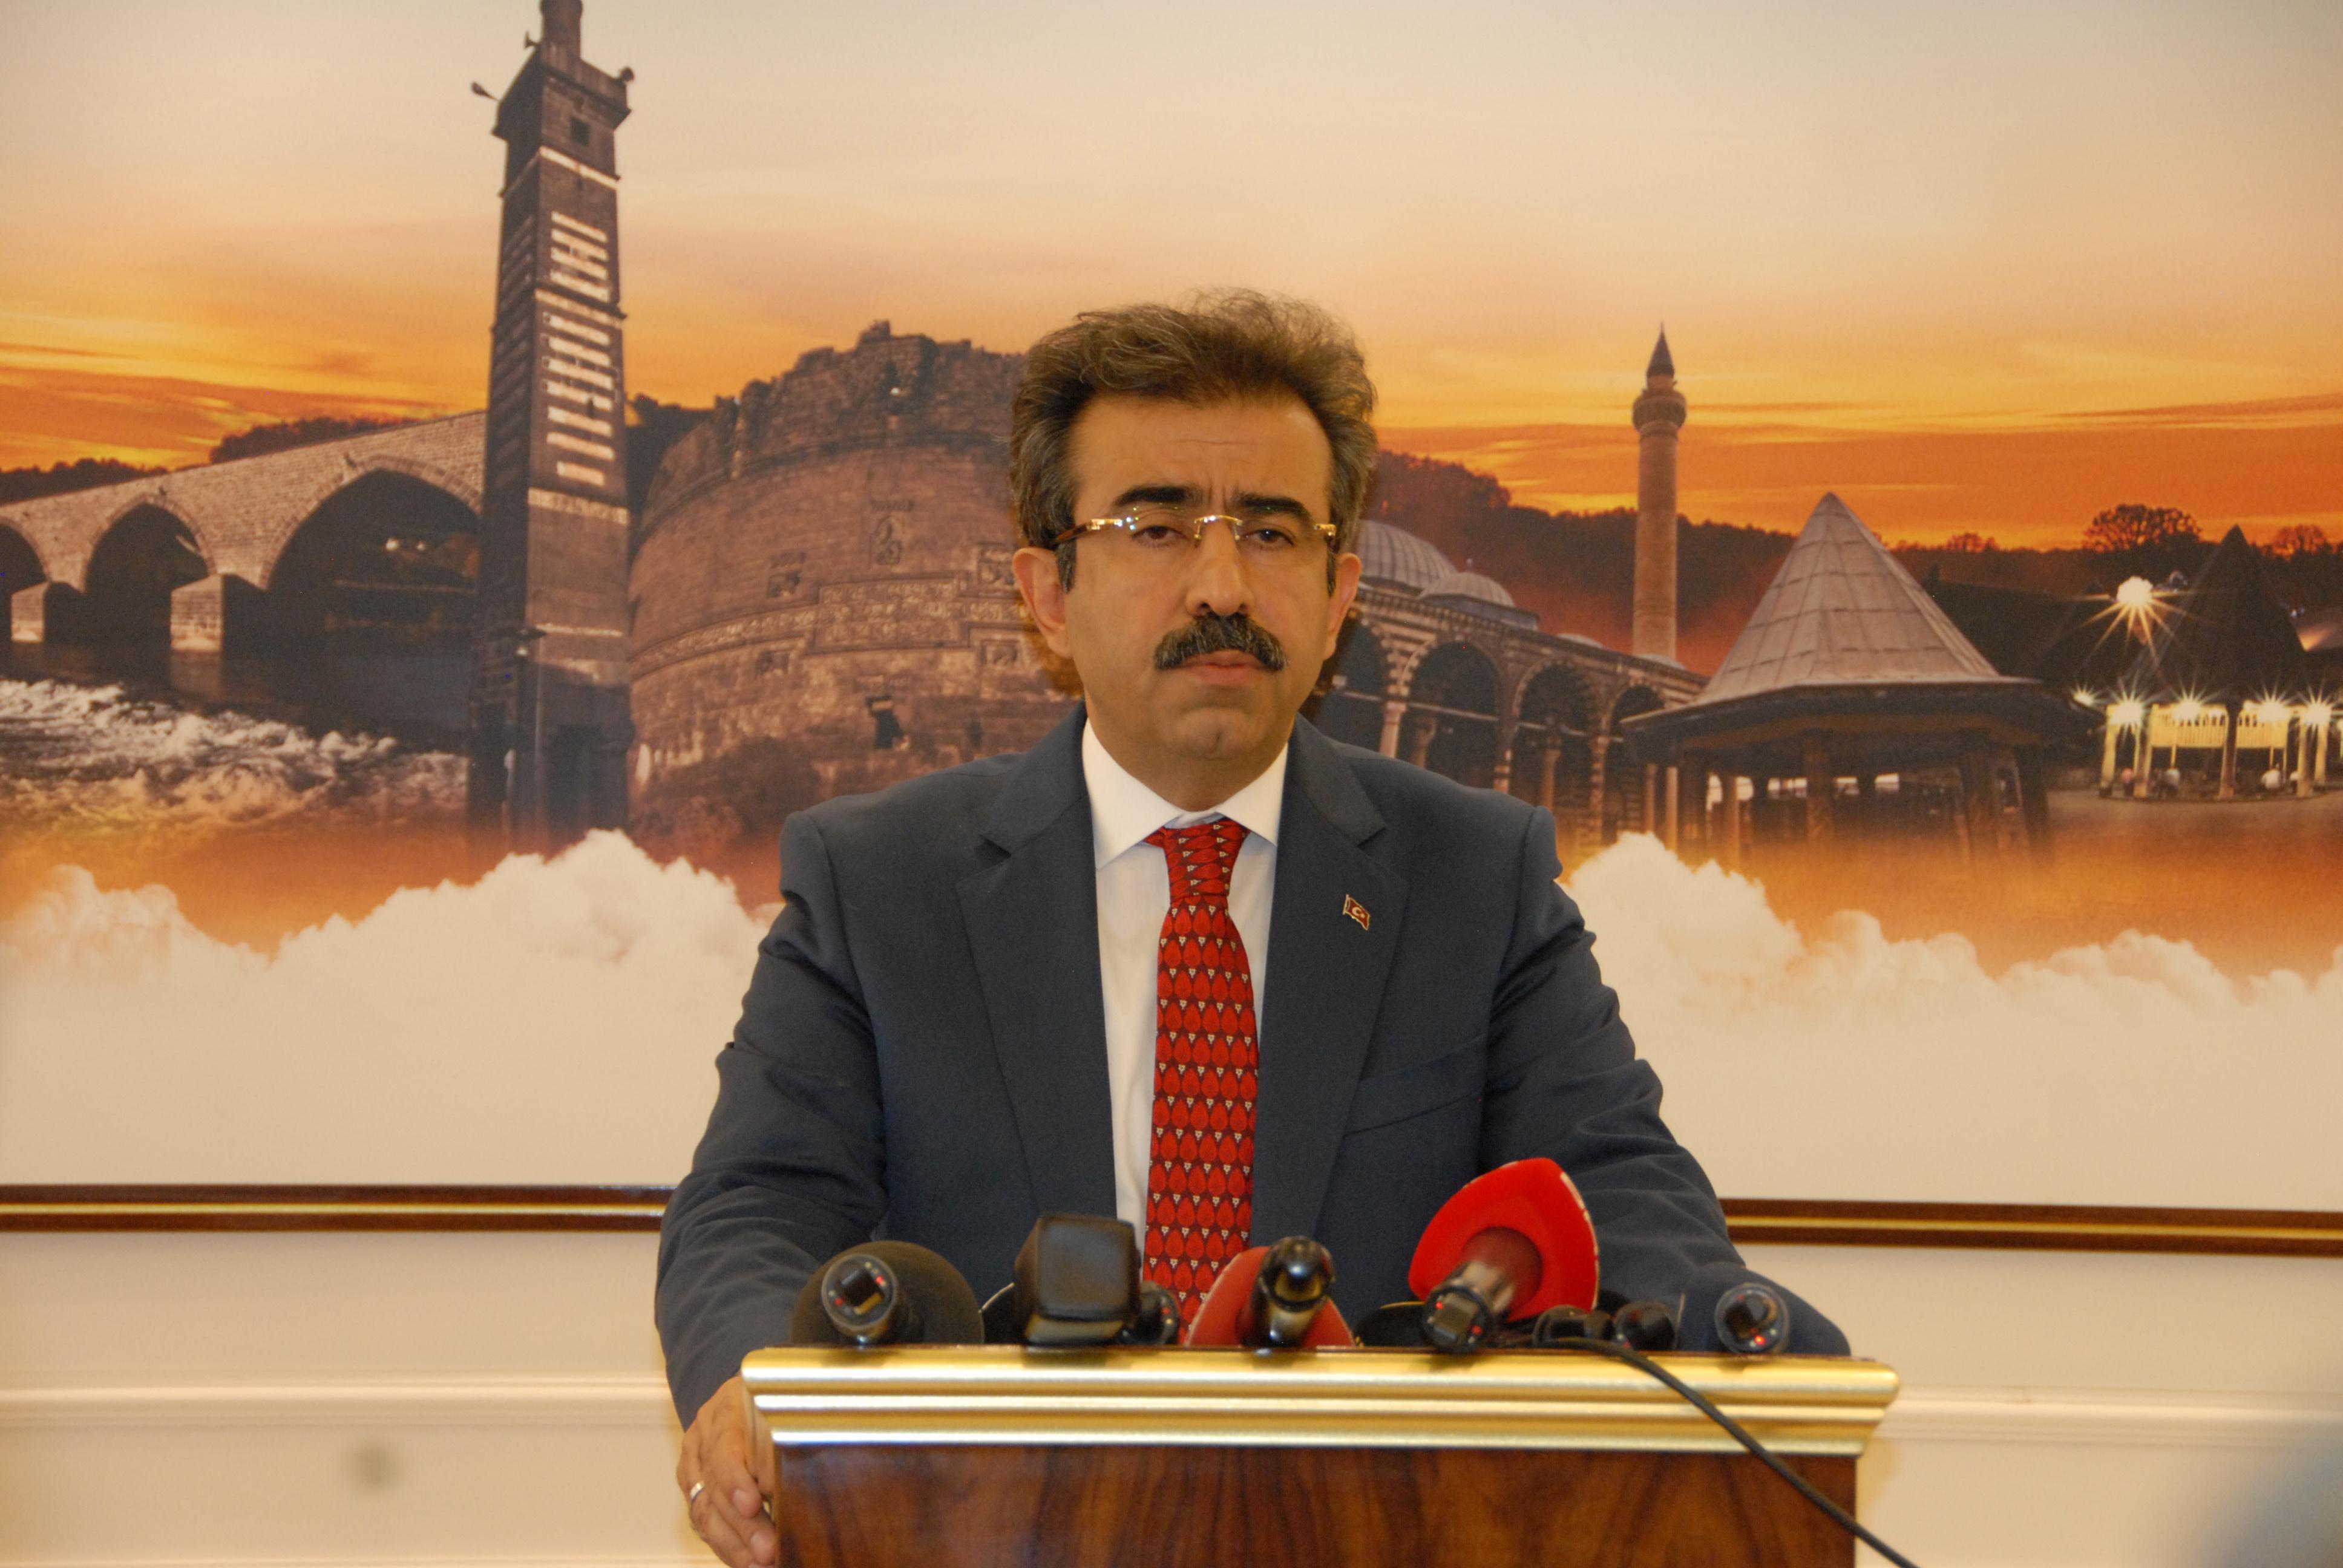 İçişleri Bakanlığı, Diyarbakır, Van ve Mardin büyükşehir belediye başkanlarının görevden uzaklaştırıldığını açıkladı